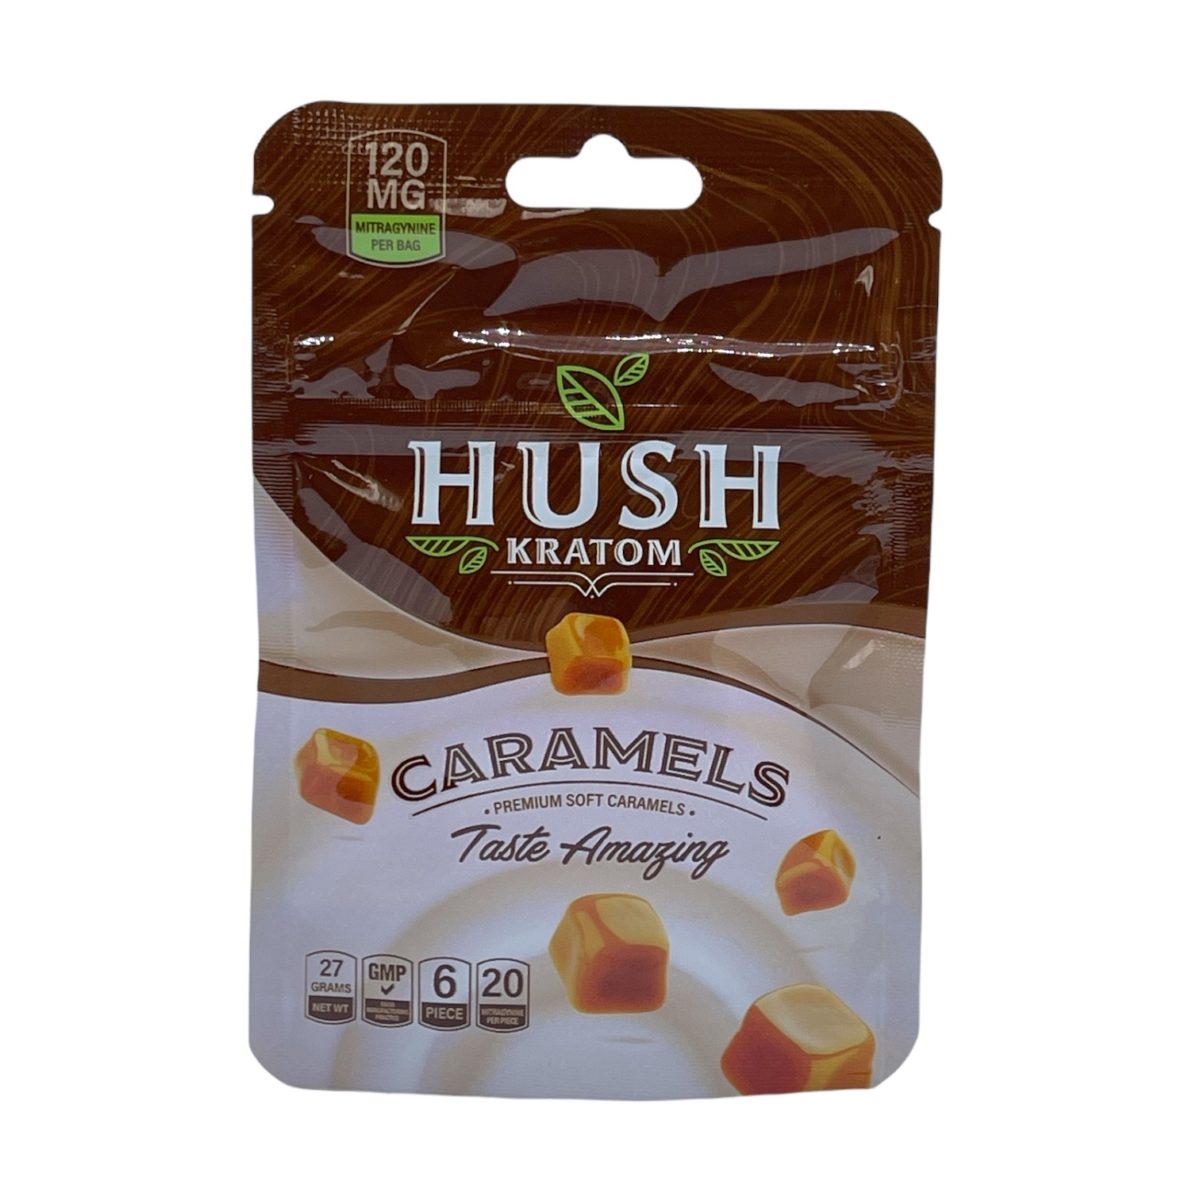 HUSH Premium Soft Caramel Kratom Candy